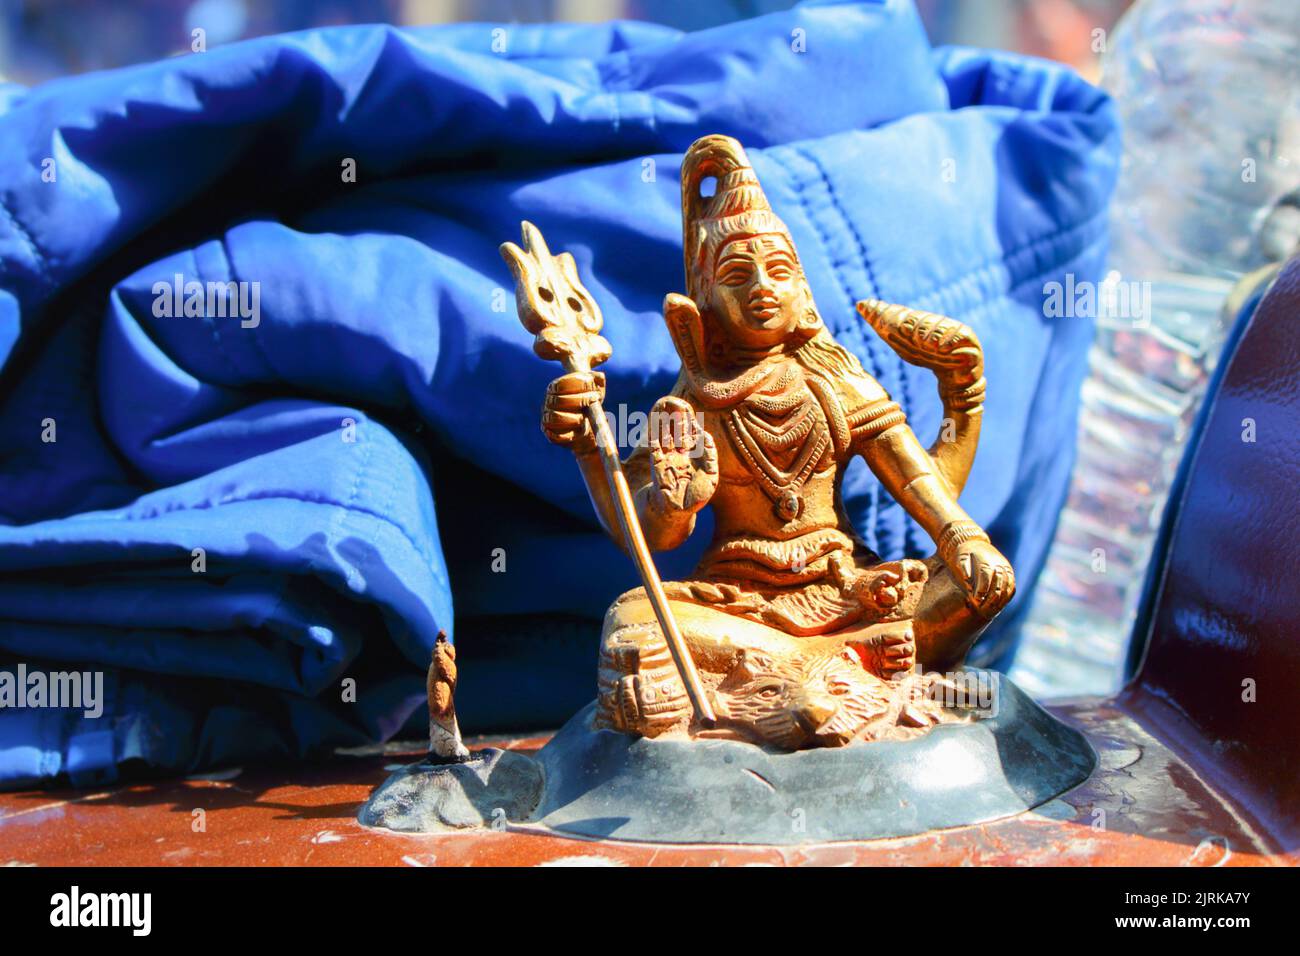 Kleine Shiva-gottesstatue. Goldene Shiva-Figur. Religiöse Kunst. Indische Religion. Spirituelles Handwerk. Stockfoto